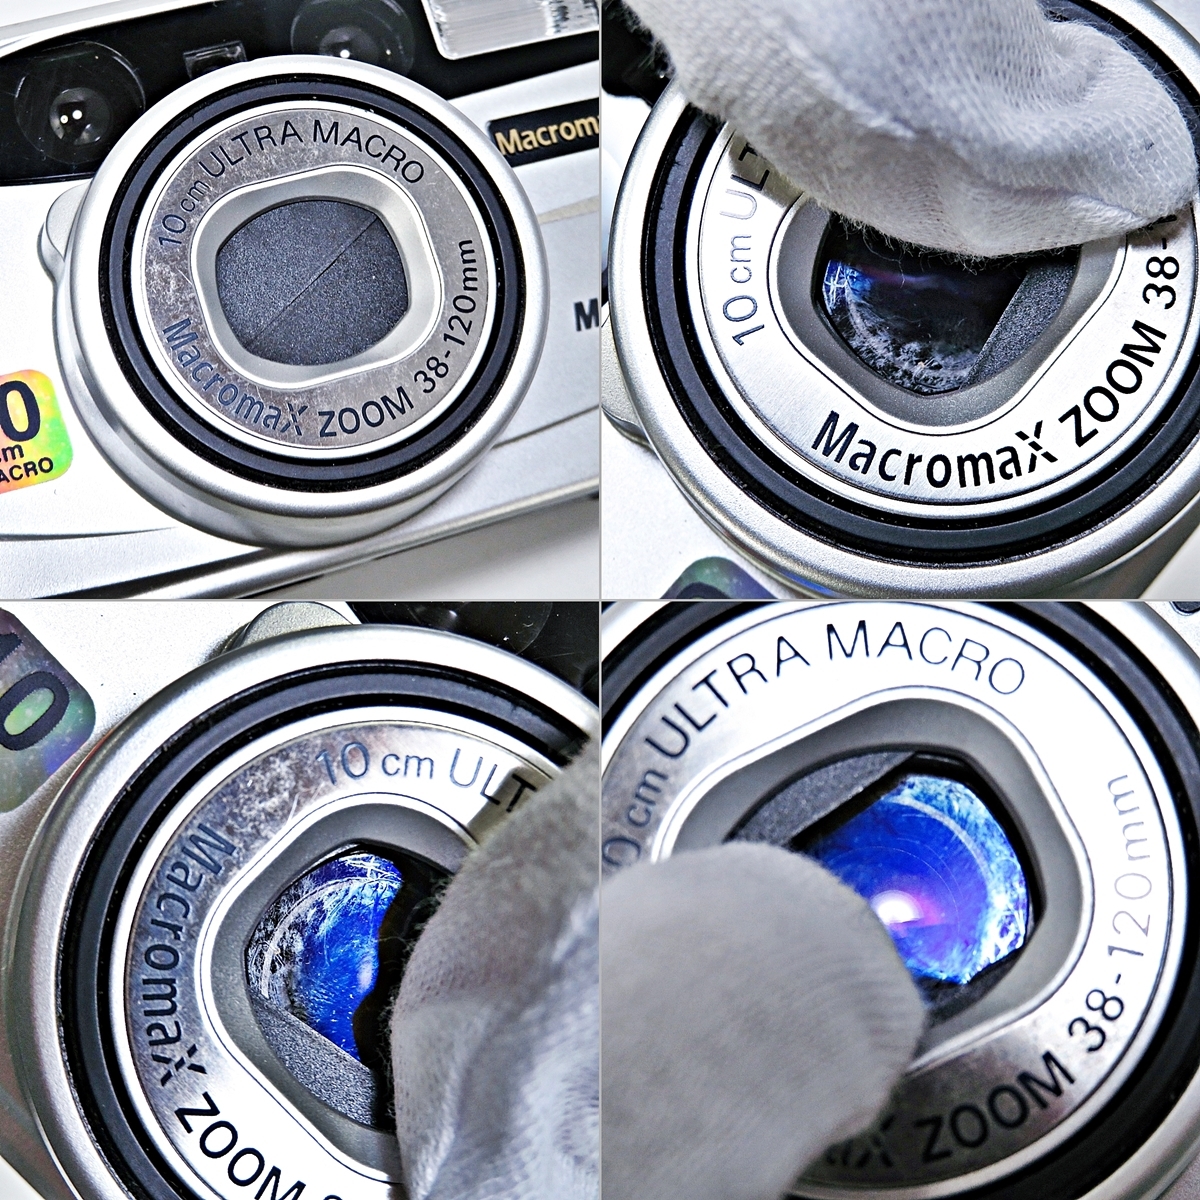 GOKO Macromax MAC-10 Z3200 10cm ULTRA MACRO 38-120mm ゴコー マクロマックス コンパクトカメラ フィルムカメラ 説明書付き 003FCZFI18_画像3